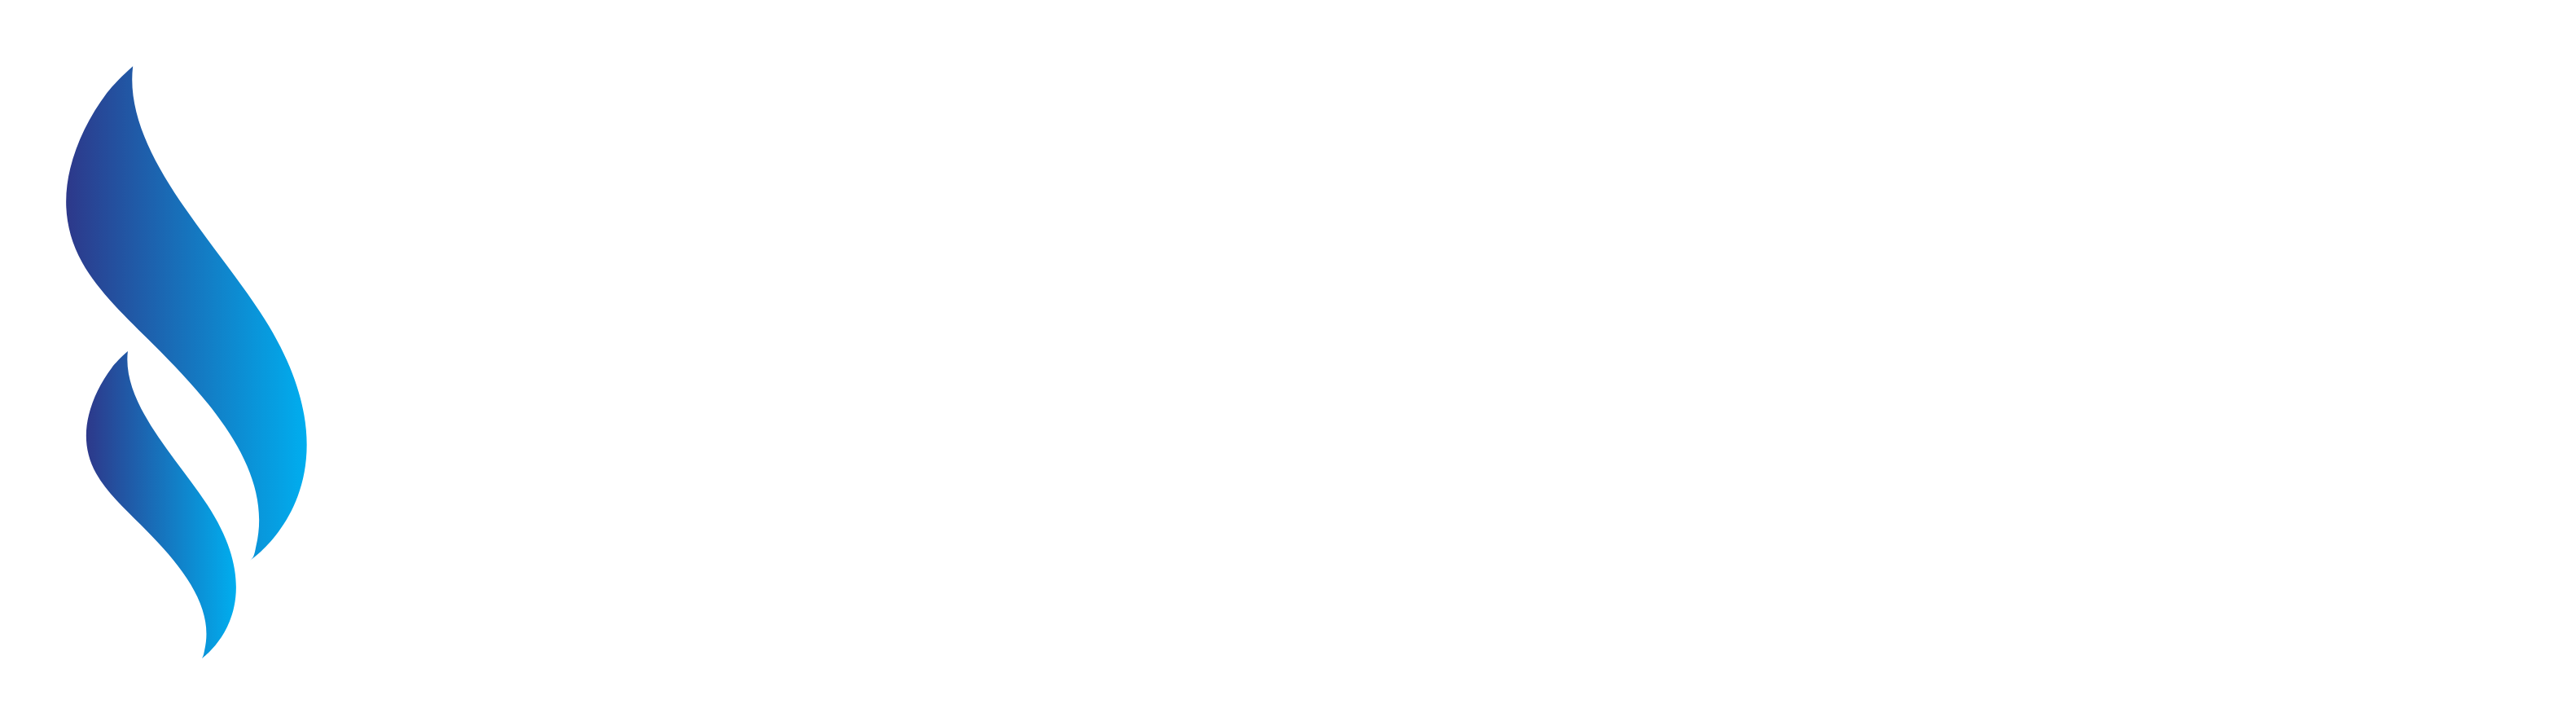 elite flow plumbing